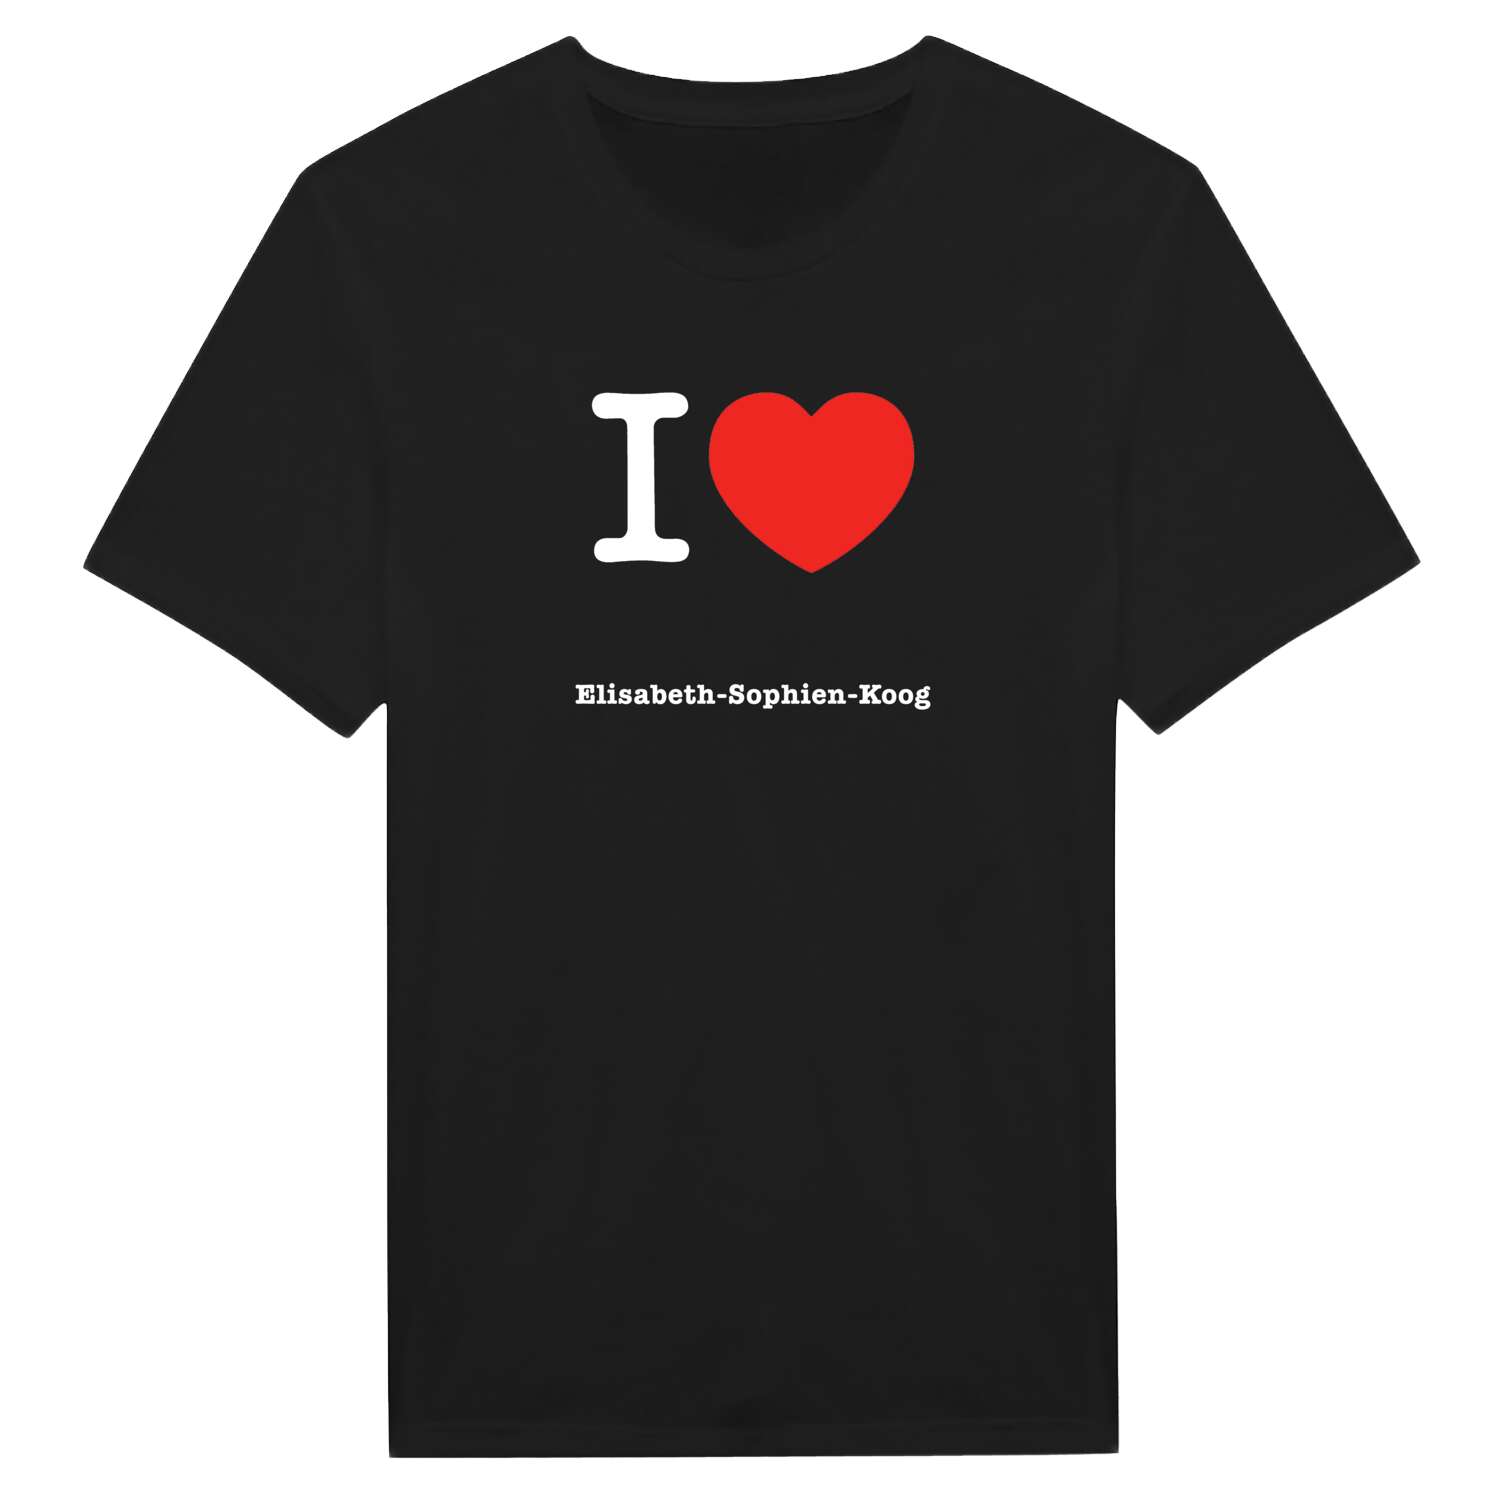 Elisabeth-Sophien-Koog T-Shirt »I love«